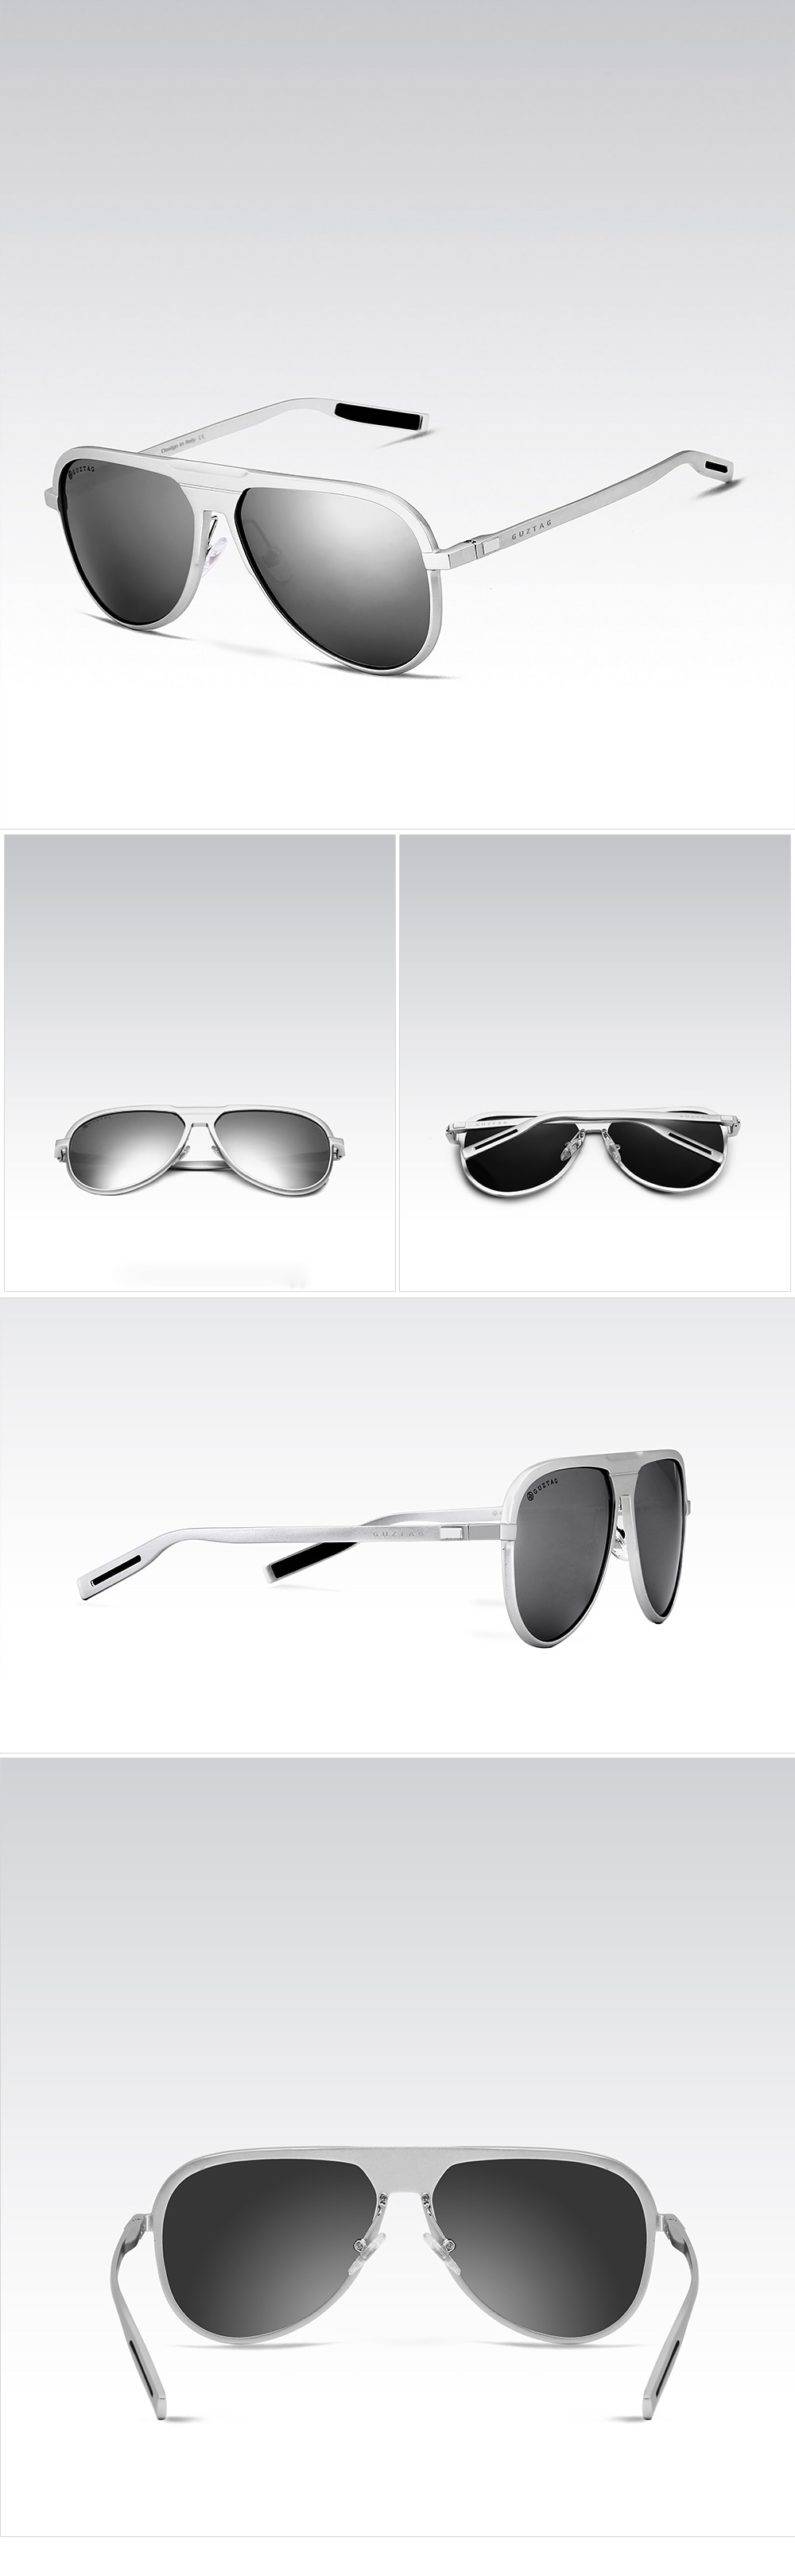 GUZTAG Unisexe Classique Marque Hommes lunettes de Soleil En Aluminium HD Polarisée UV400 miroir Mâle Lunettes de Soleil Femmes Pour Hommes Oculos de sol G9828